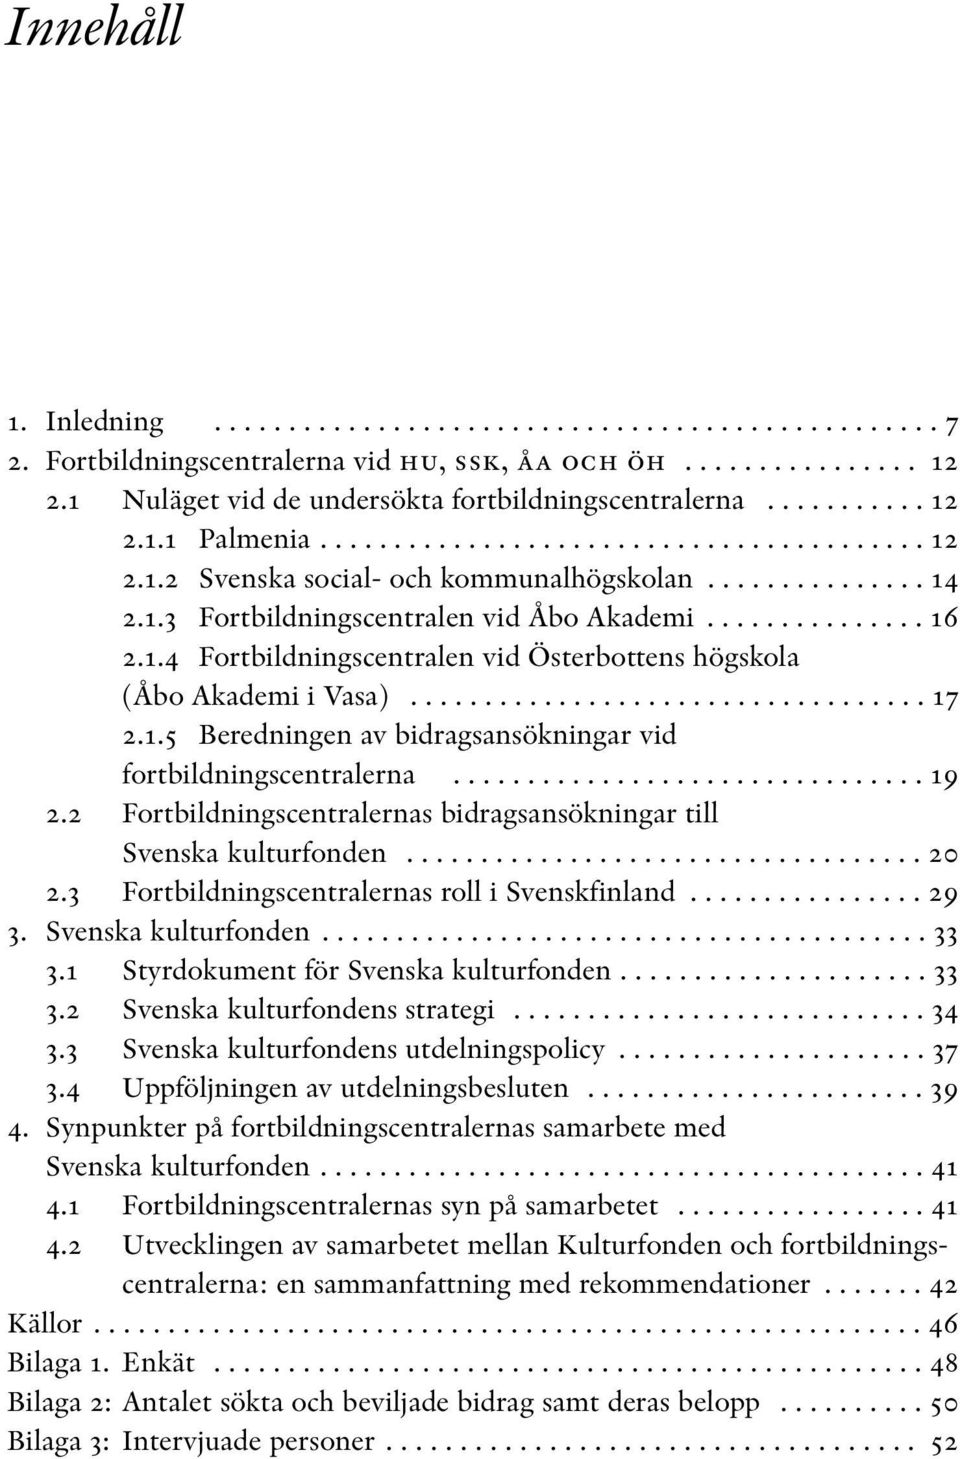 1.4 Fortbildningscentralen vid Österbottens högskola (Åbo Akademi i Vasa)................................... 17 2.1.5 Beredningen av bidragsansökningar vid fortbildningscentralerna................................ 19 2.